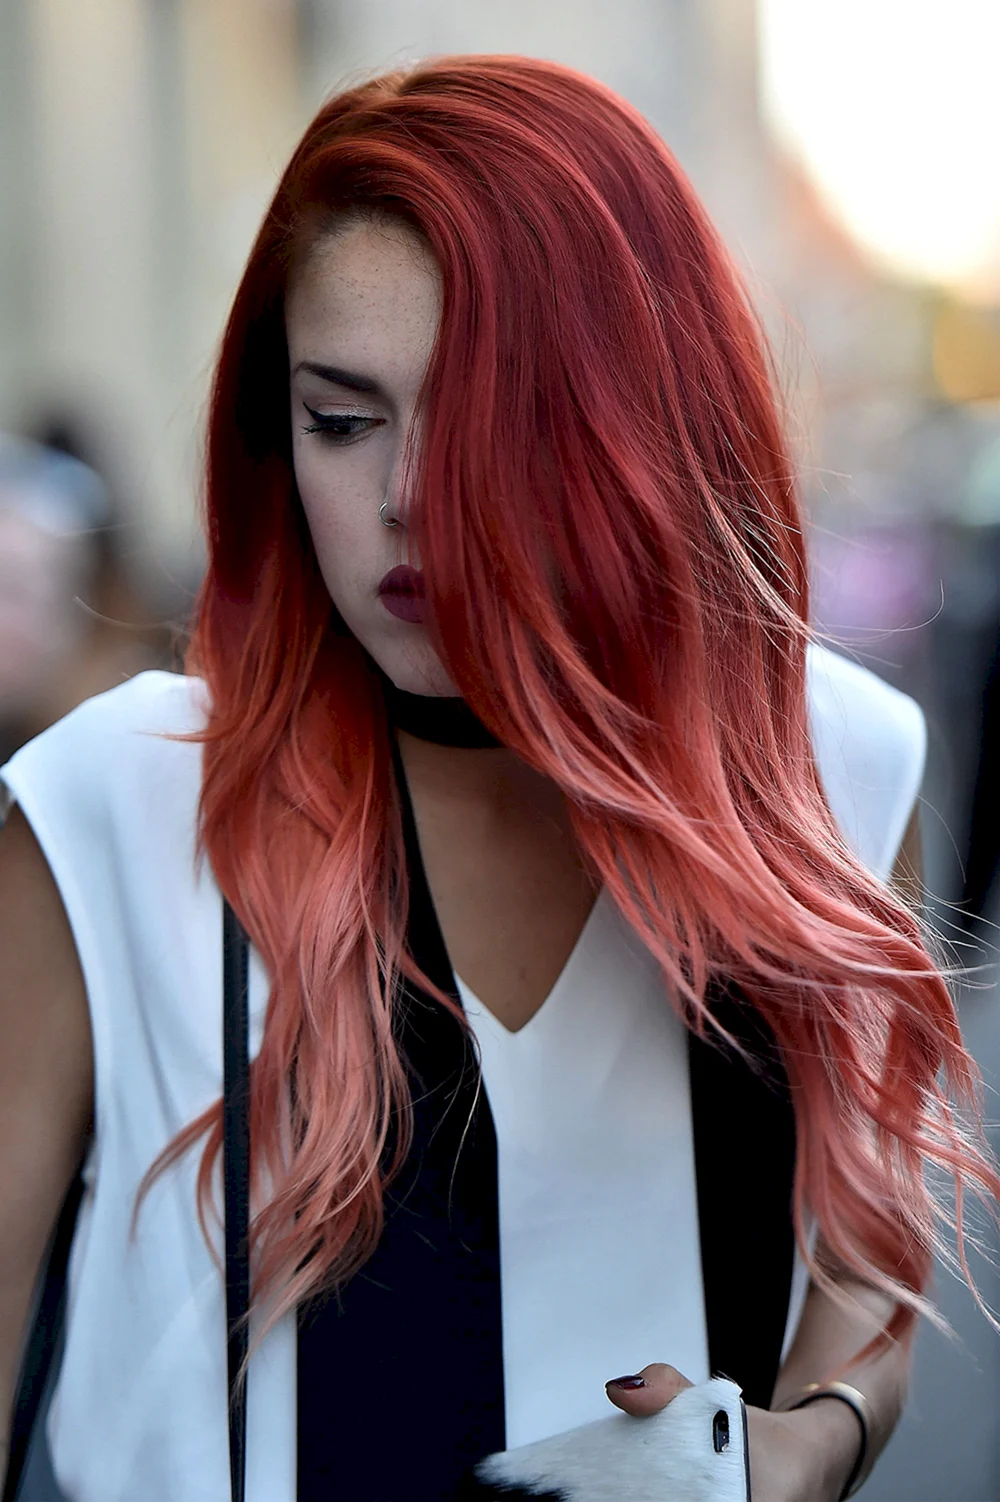 Рыже розовый цвет волос